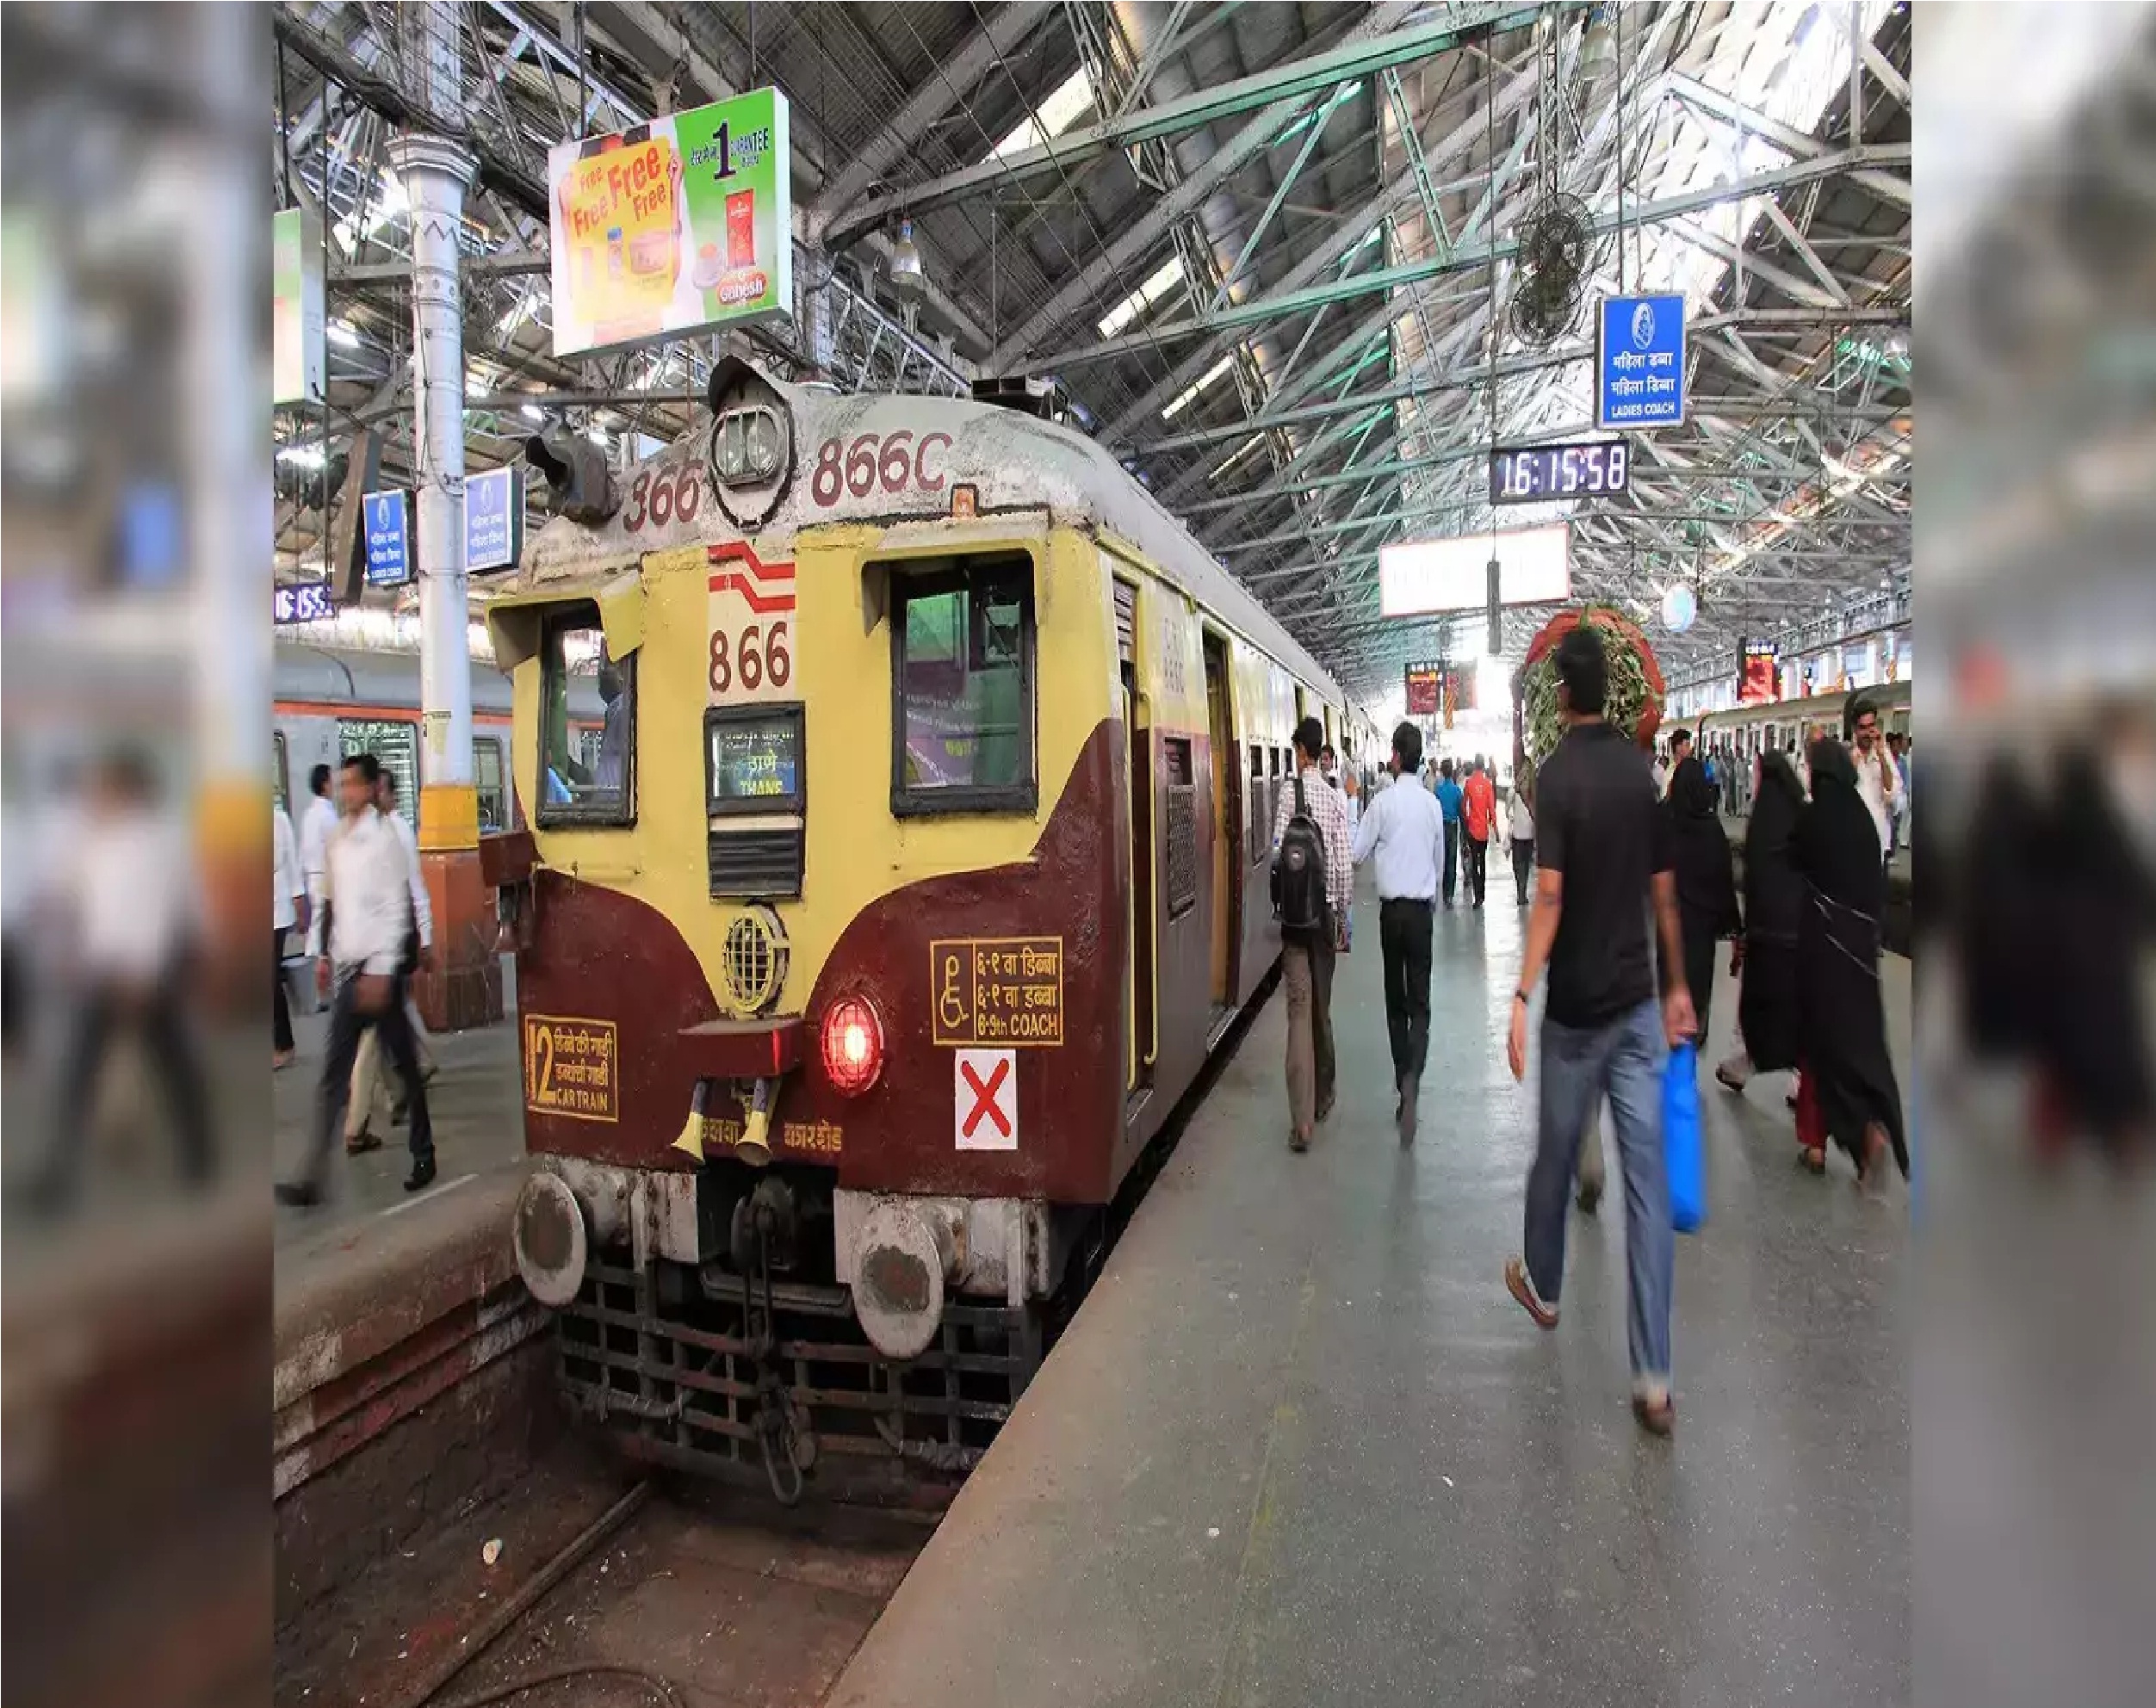 New Delhi: ट्रेन में सफर के दौरान घर से ले गए पूड़ी-सब्‍जी, खाने के बाद कर दी एक गलती, भरना पड़ा जुर्माना